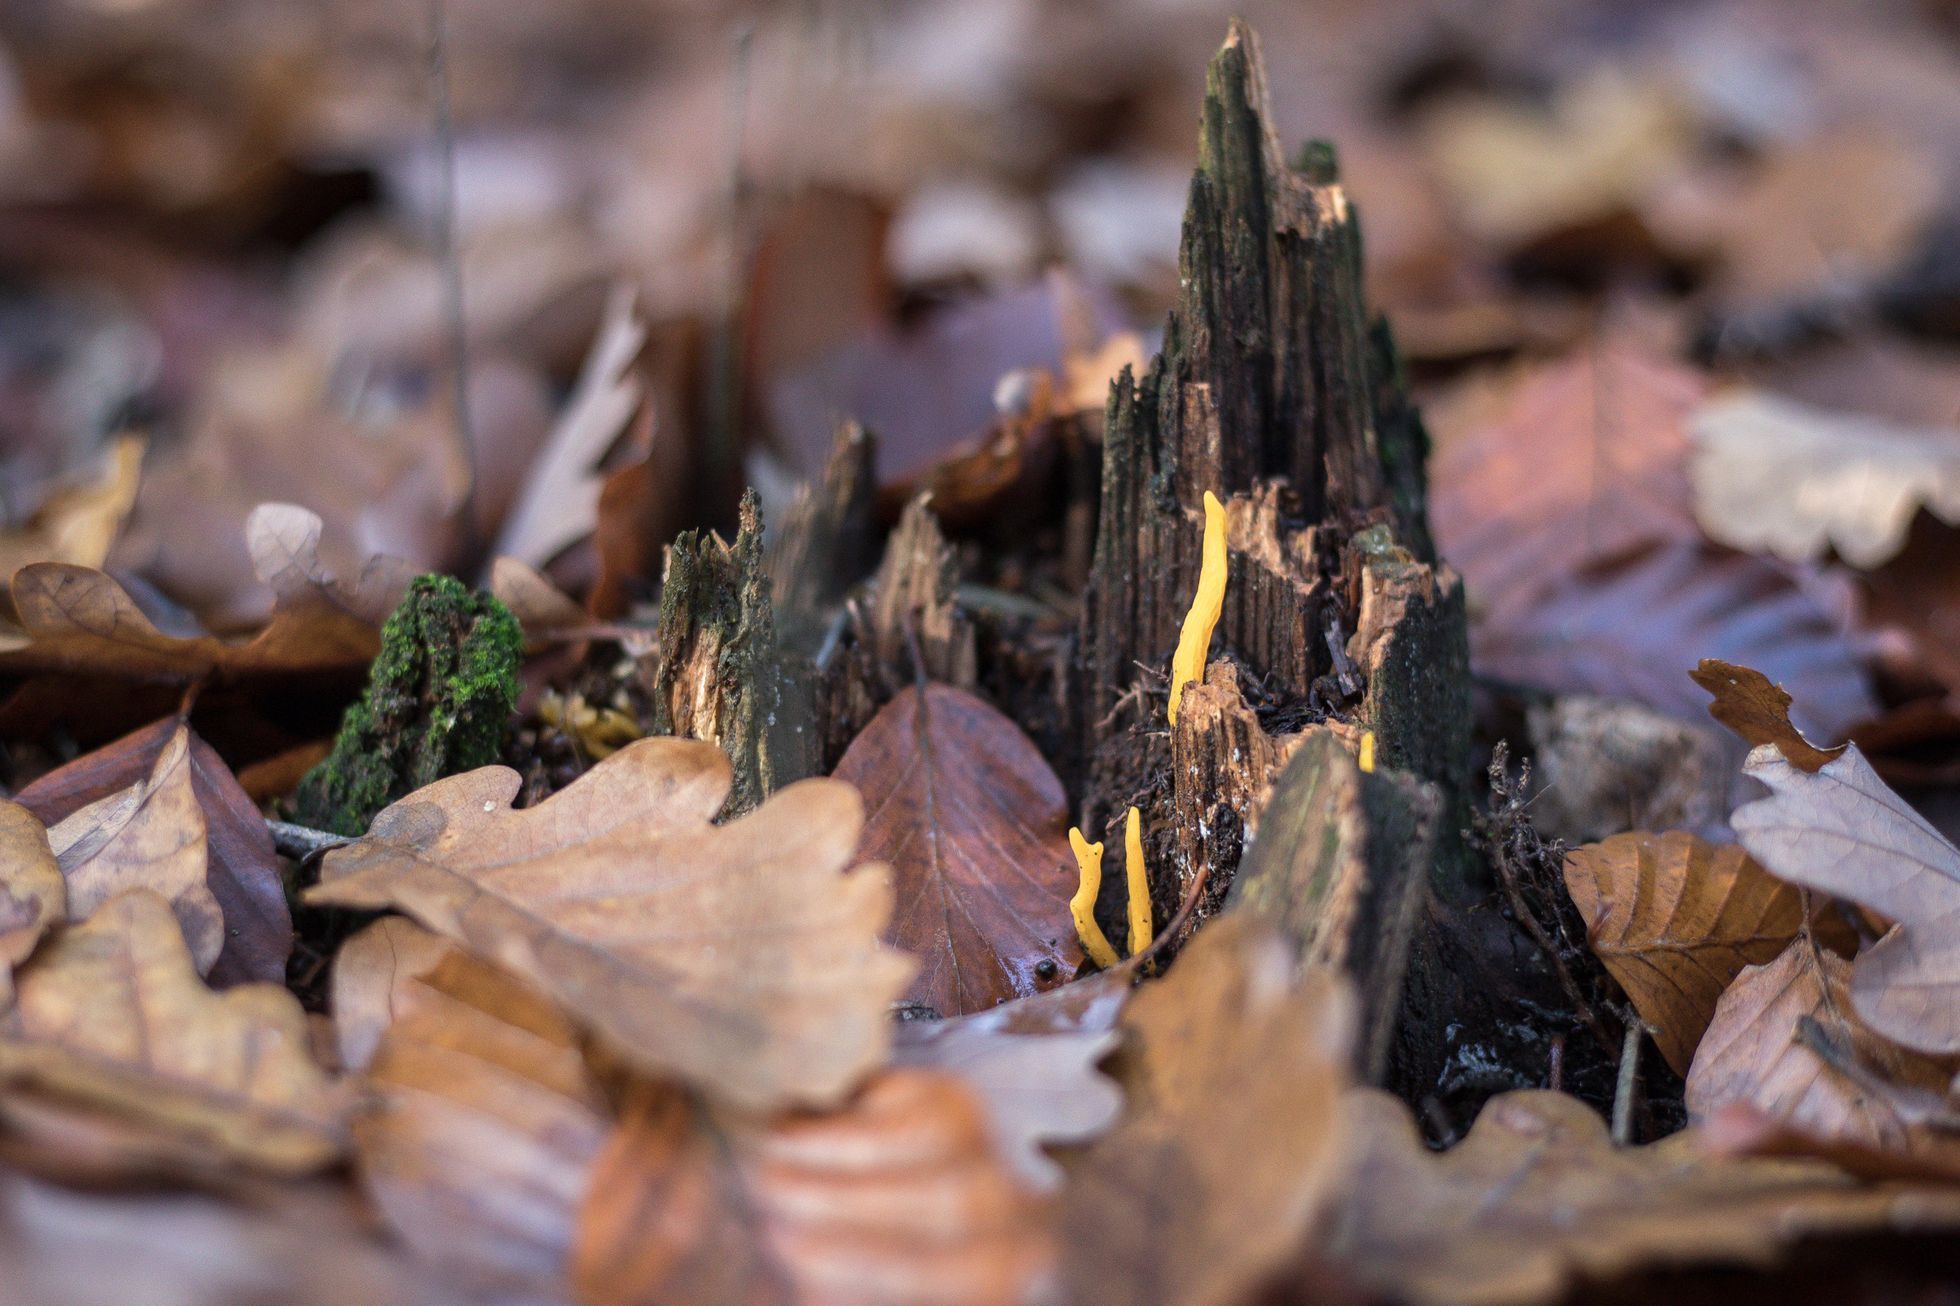 Houby, houbaření, les, podzim, počasí, Voděradské bučiny